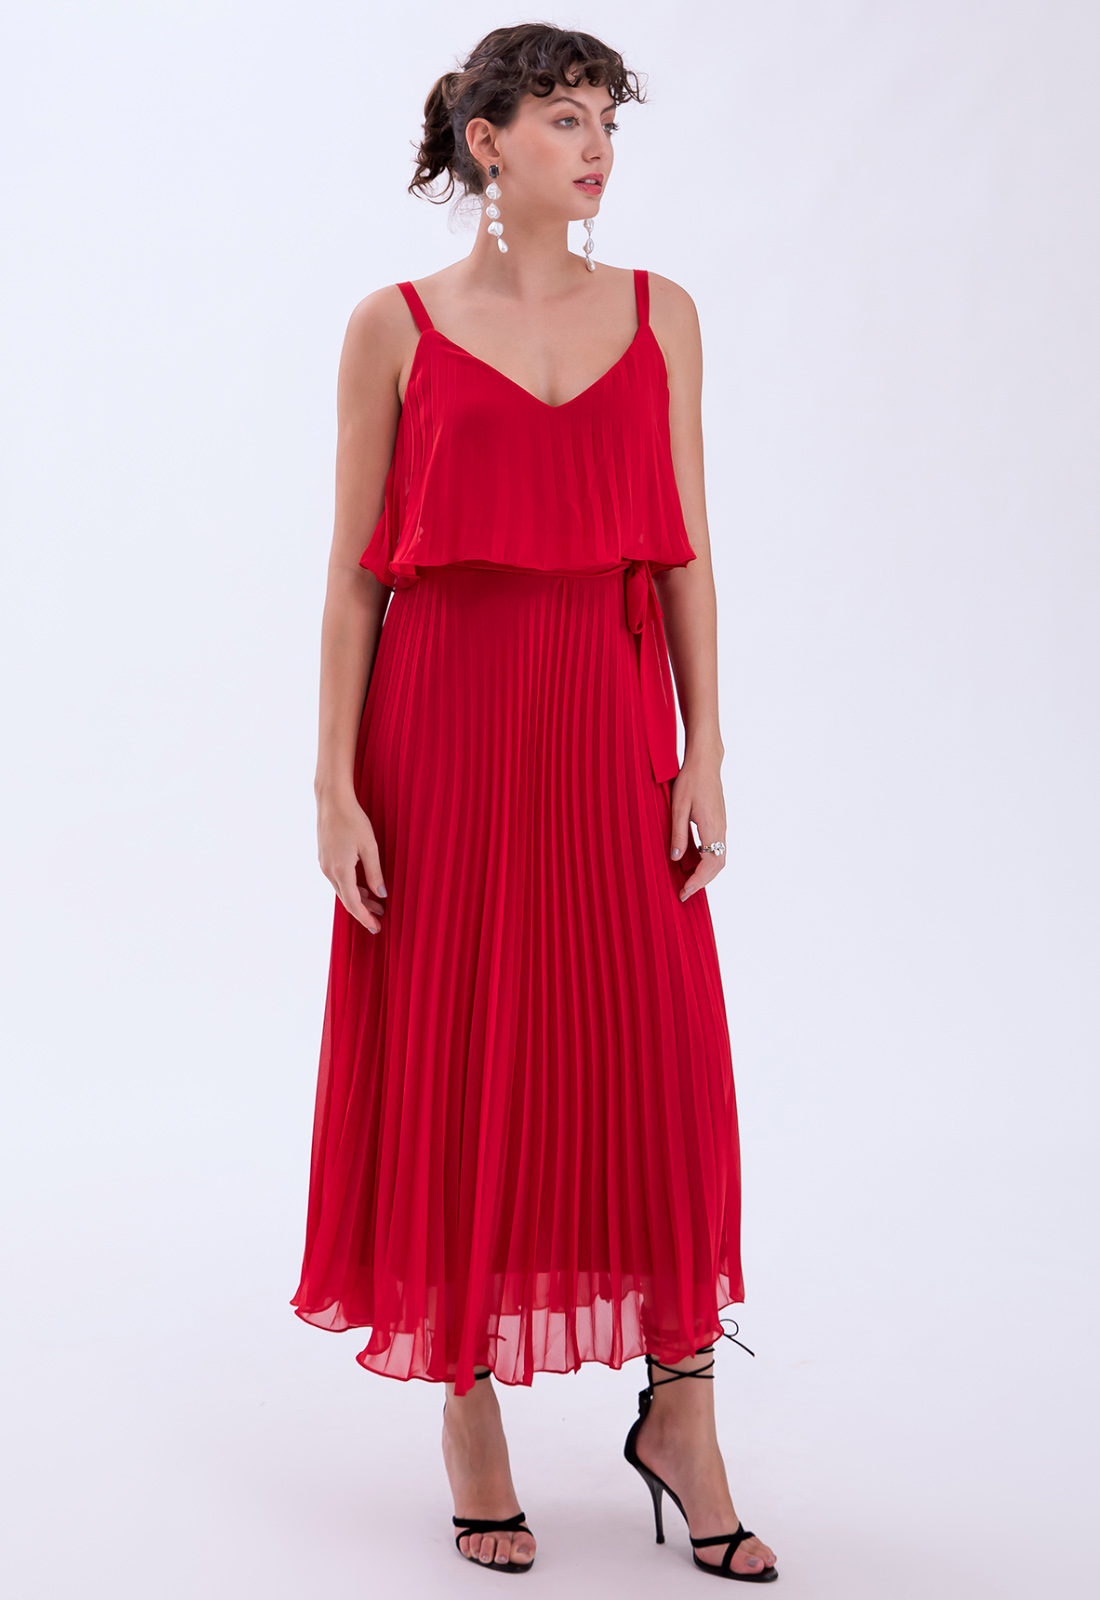 Vestido de festa plissado vermelho - Ref. 2466